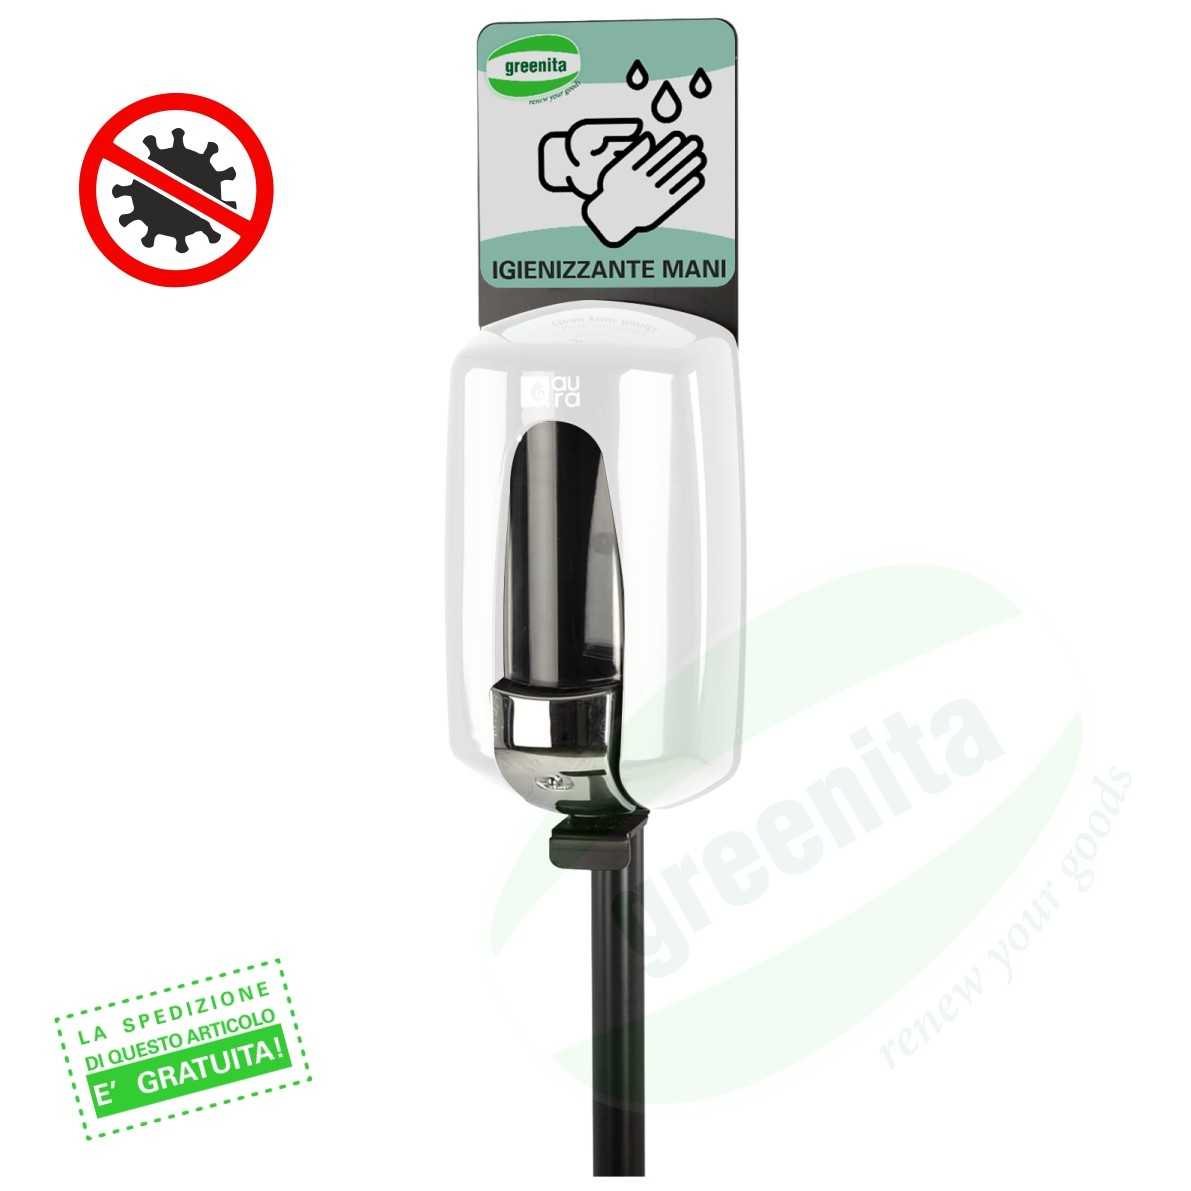 Colonnina Igienizzante con Dispenser per Gel Igienizzante/Disinfettante Mani - FINITURA METALLO VERNICIATO BIANCO - 3